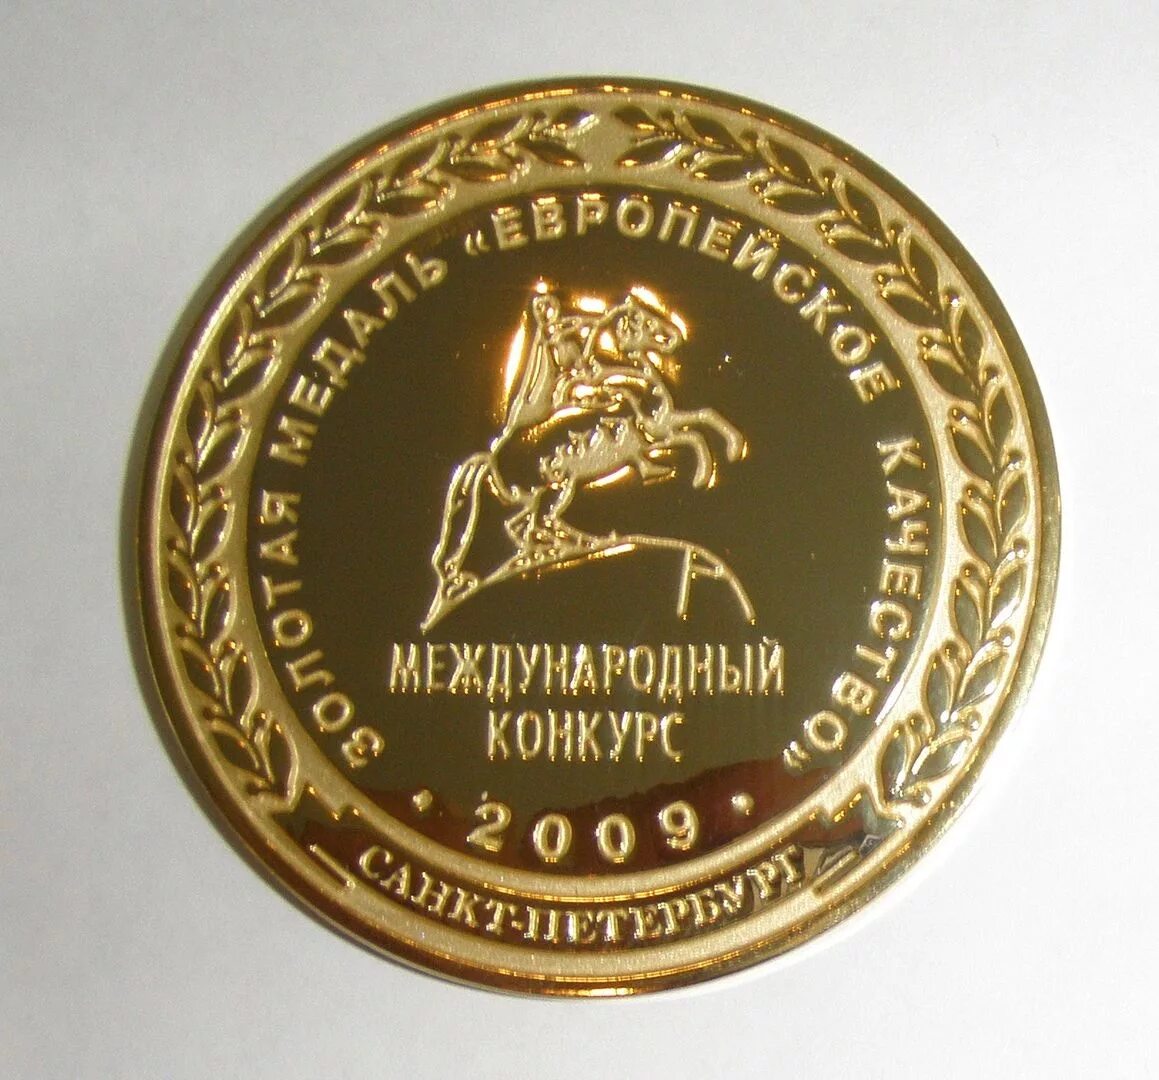 Золотая медаль. Медаль европейское качество. Золотая медаль европейское качество 2010. Золотая медаль МГСУ.